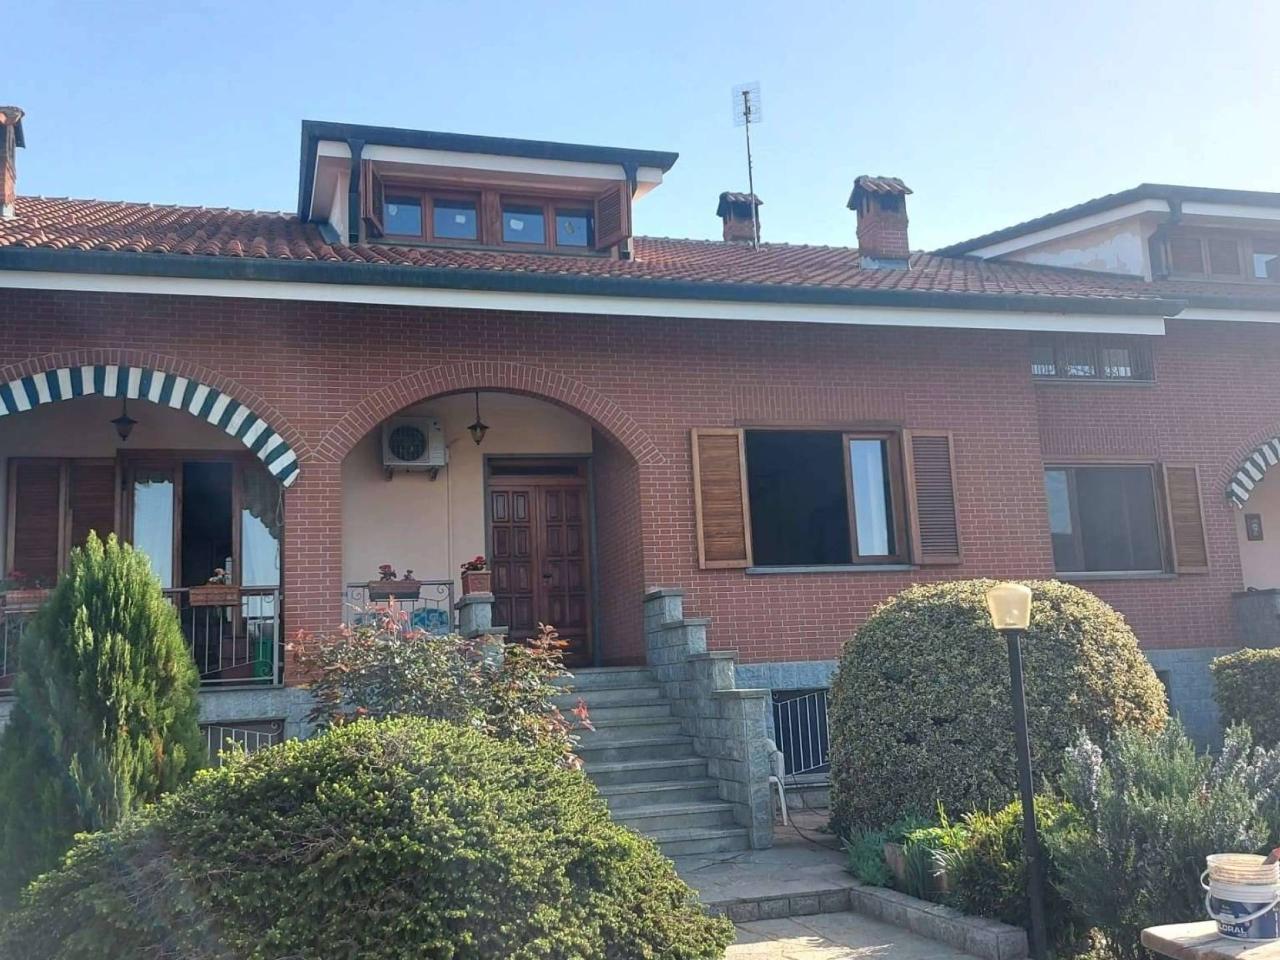 Villa in vendita a Volvera